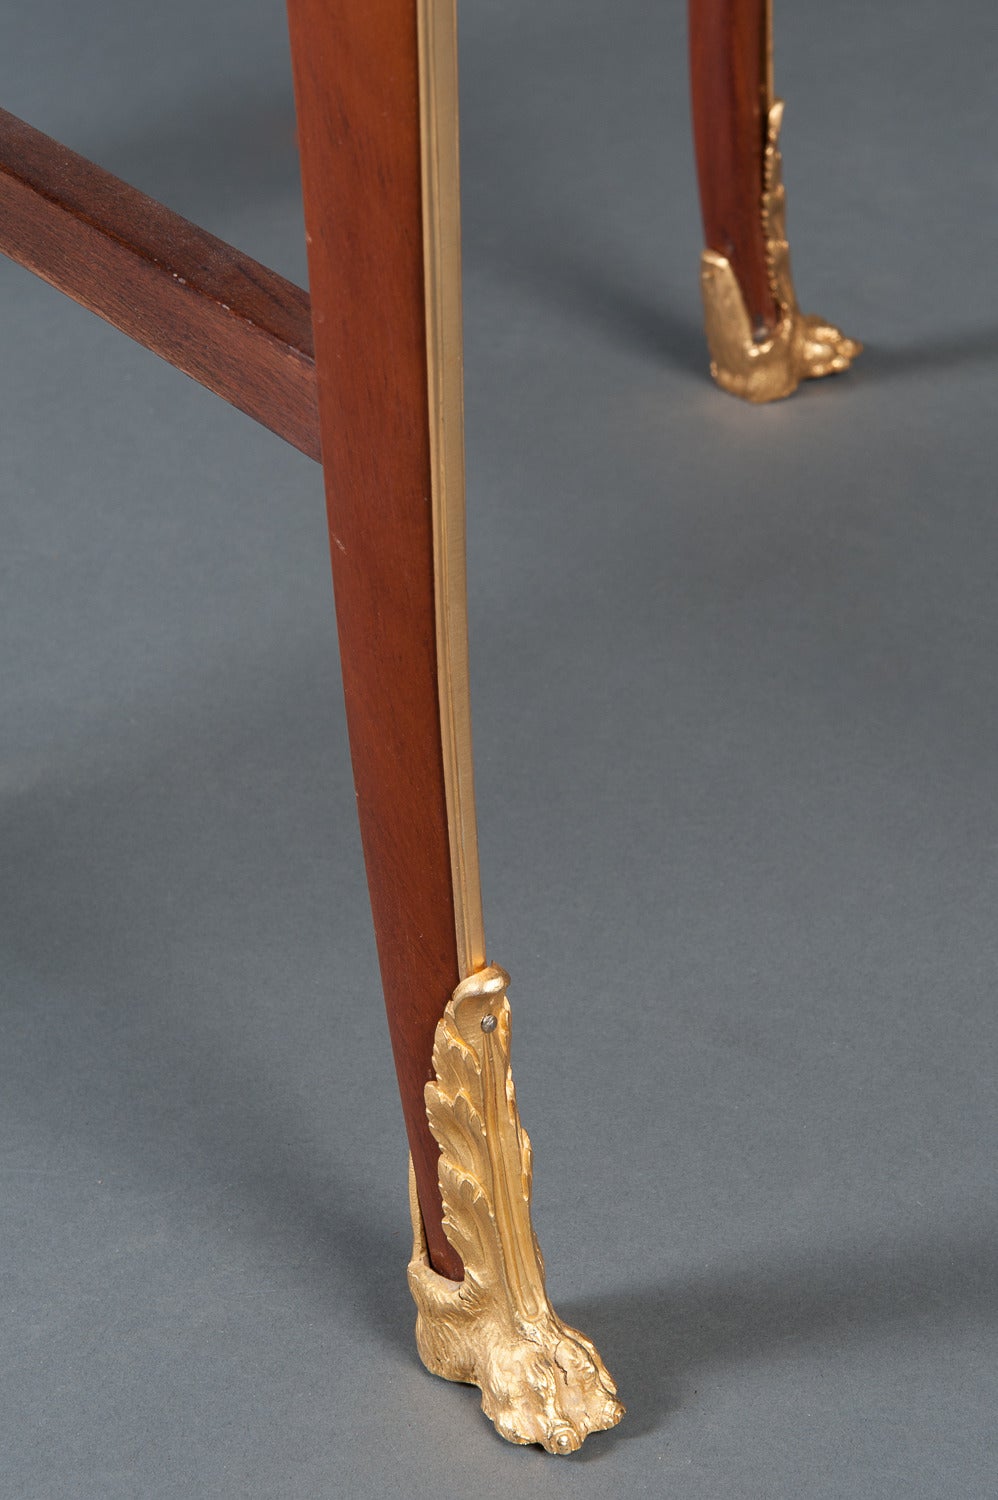 Ein prächtiger antiker Tisch aus Mahagoni, Königsholz, Satiné-Gitterparkett und Satinholz-Marketerie, der Francois Linke zugeschrieben wird, in Goldbronze gefasst.

Die runde Parkettplatte wird von einer Intarsienbandeinfassung und einem Band aus